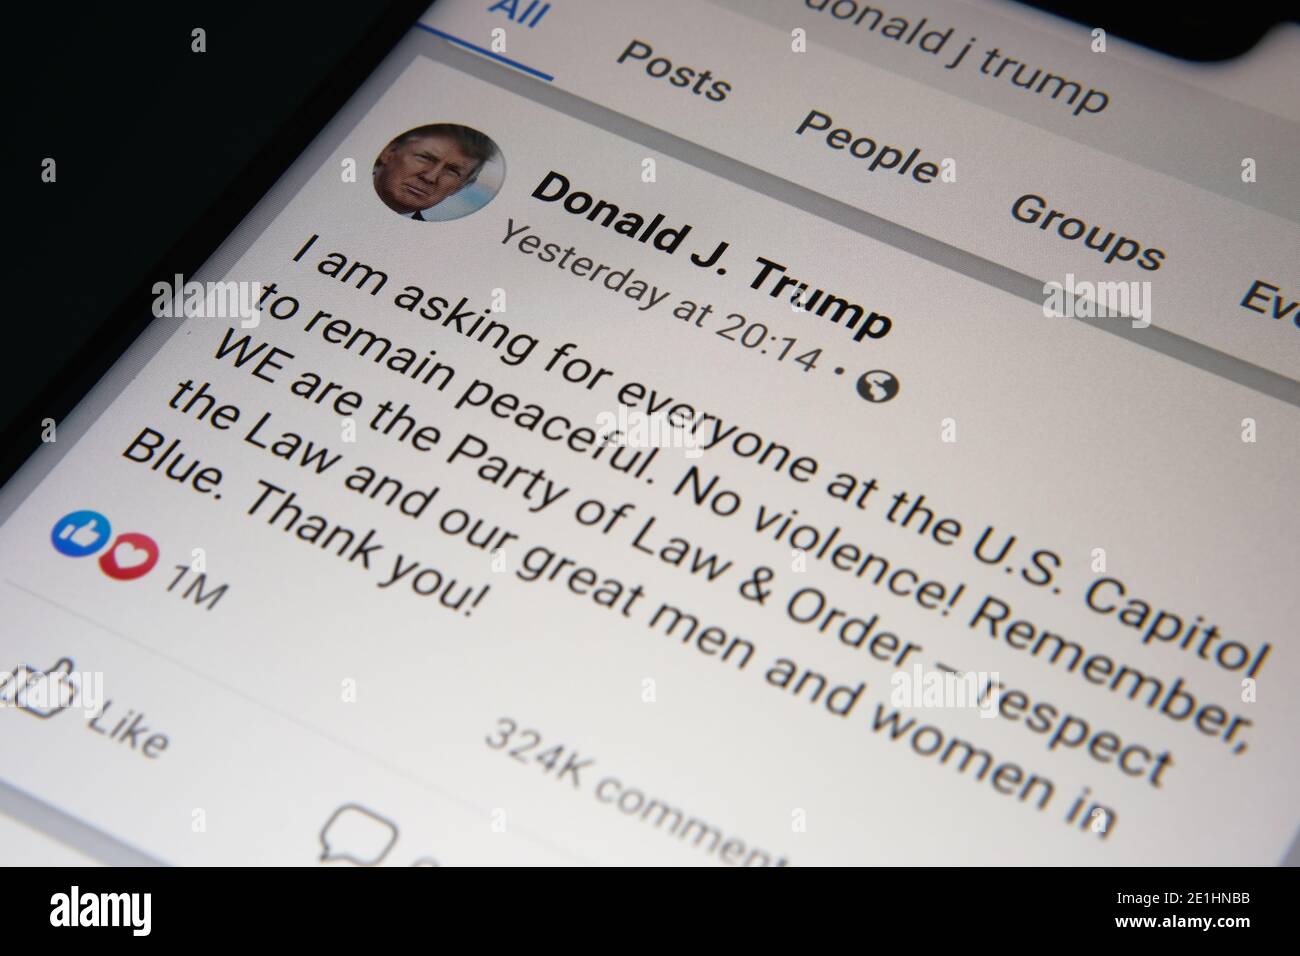 La publicación de Donald Trump en Facebook sobre la violencia en el Capitolio de Estados Unidos se ve en la pantalla. Que fue el último mensaje antes de que su cuenta se bloqueara. Foto de stock